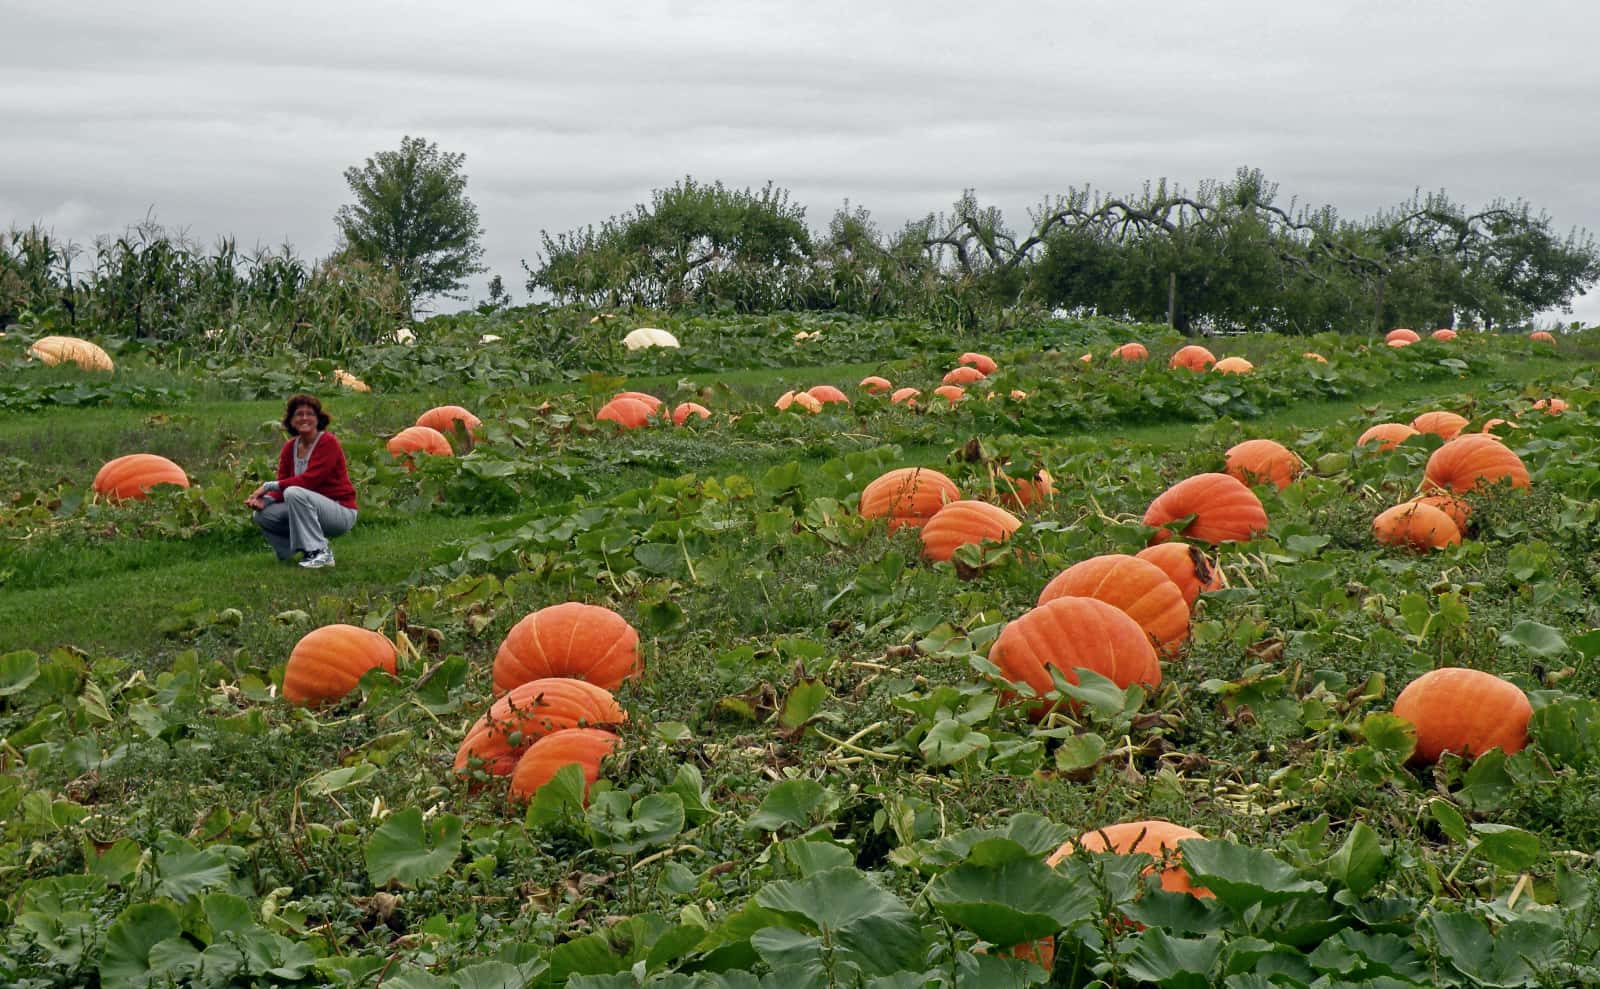 Woman kneeling in field of large pumpkins